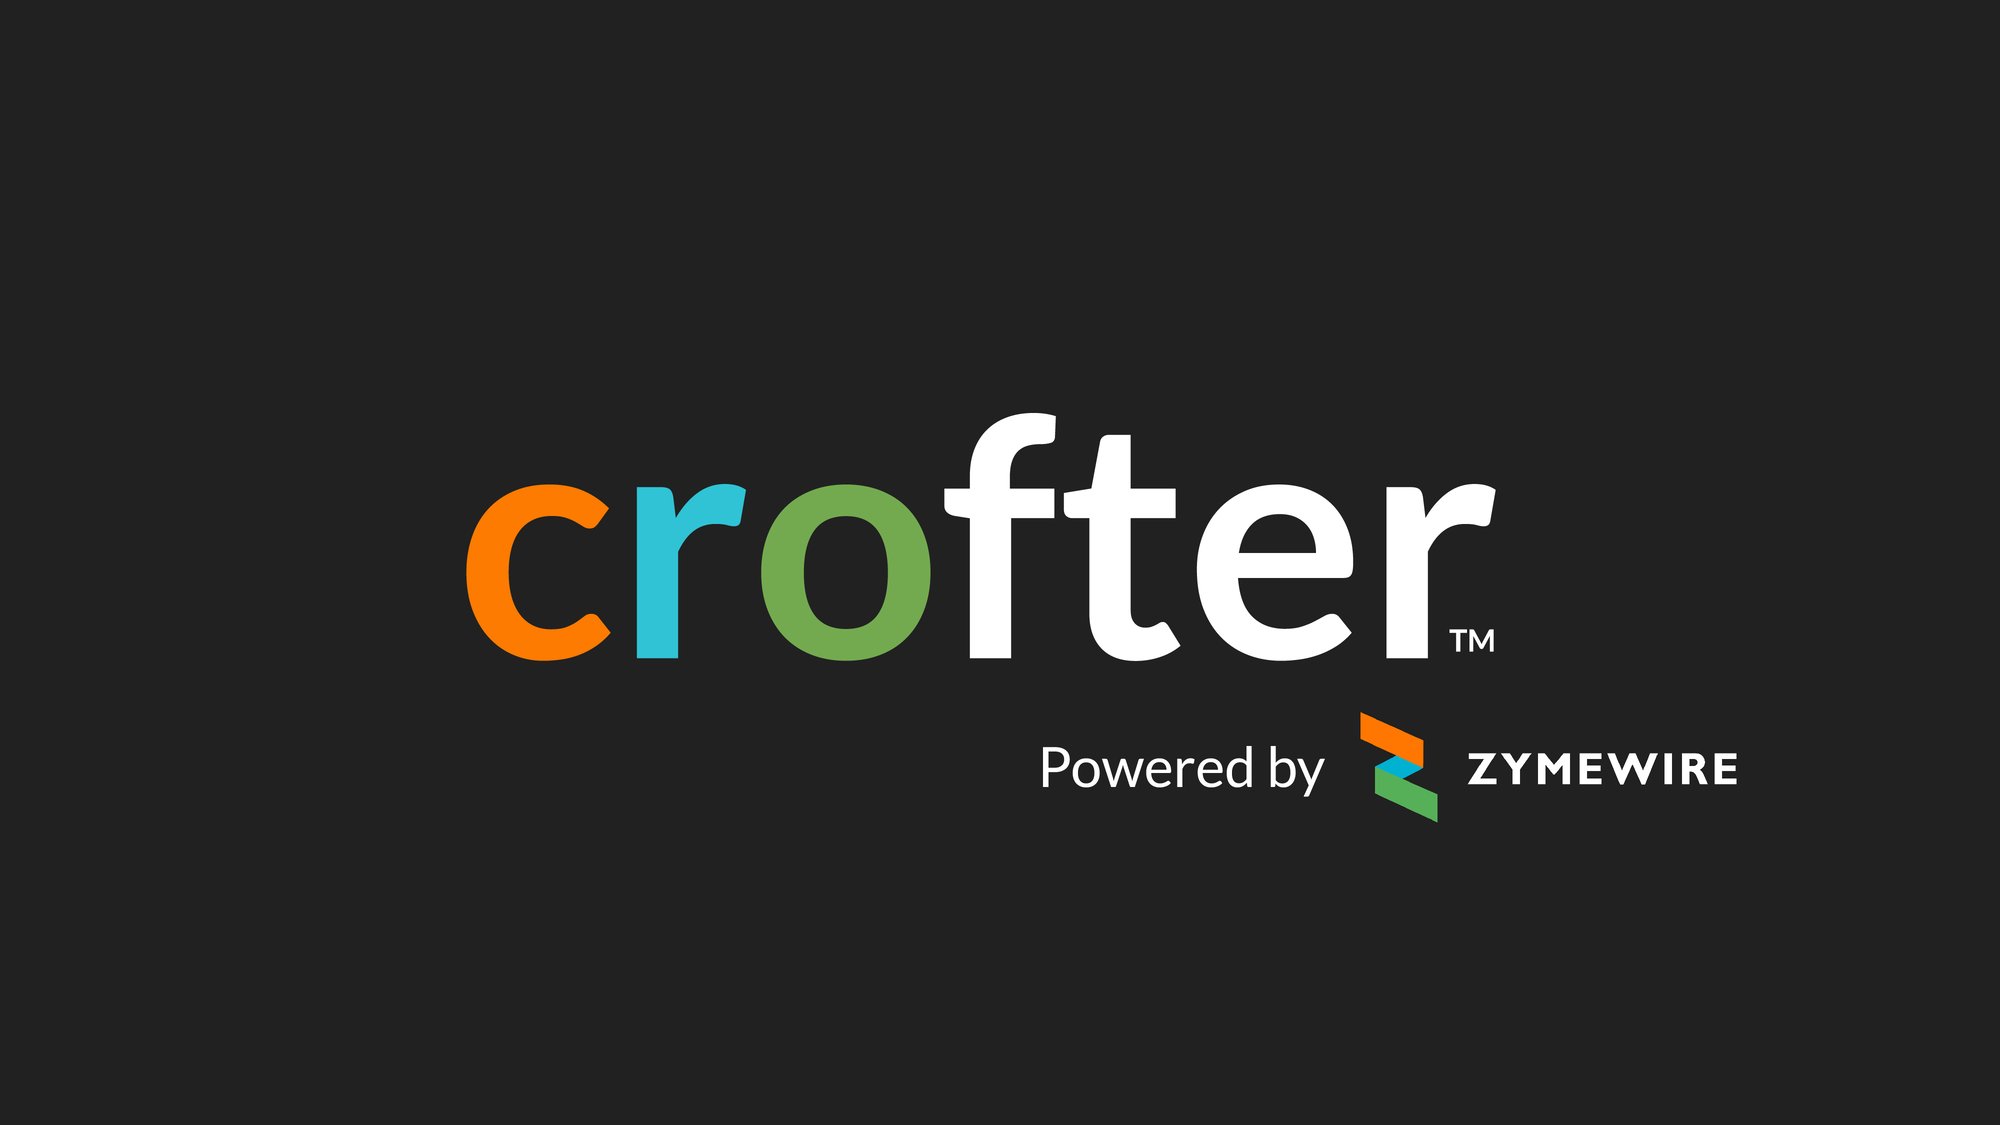 crofter-logo-black-01